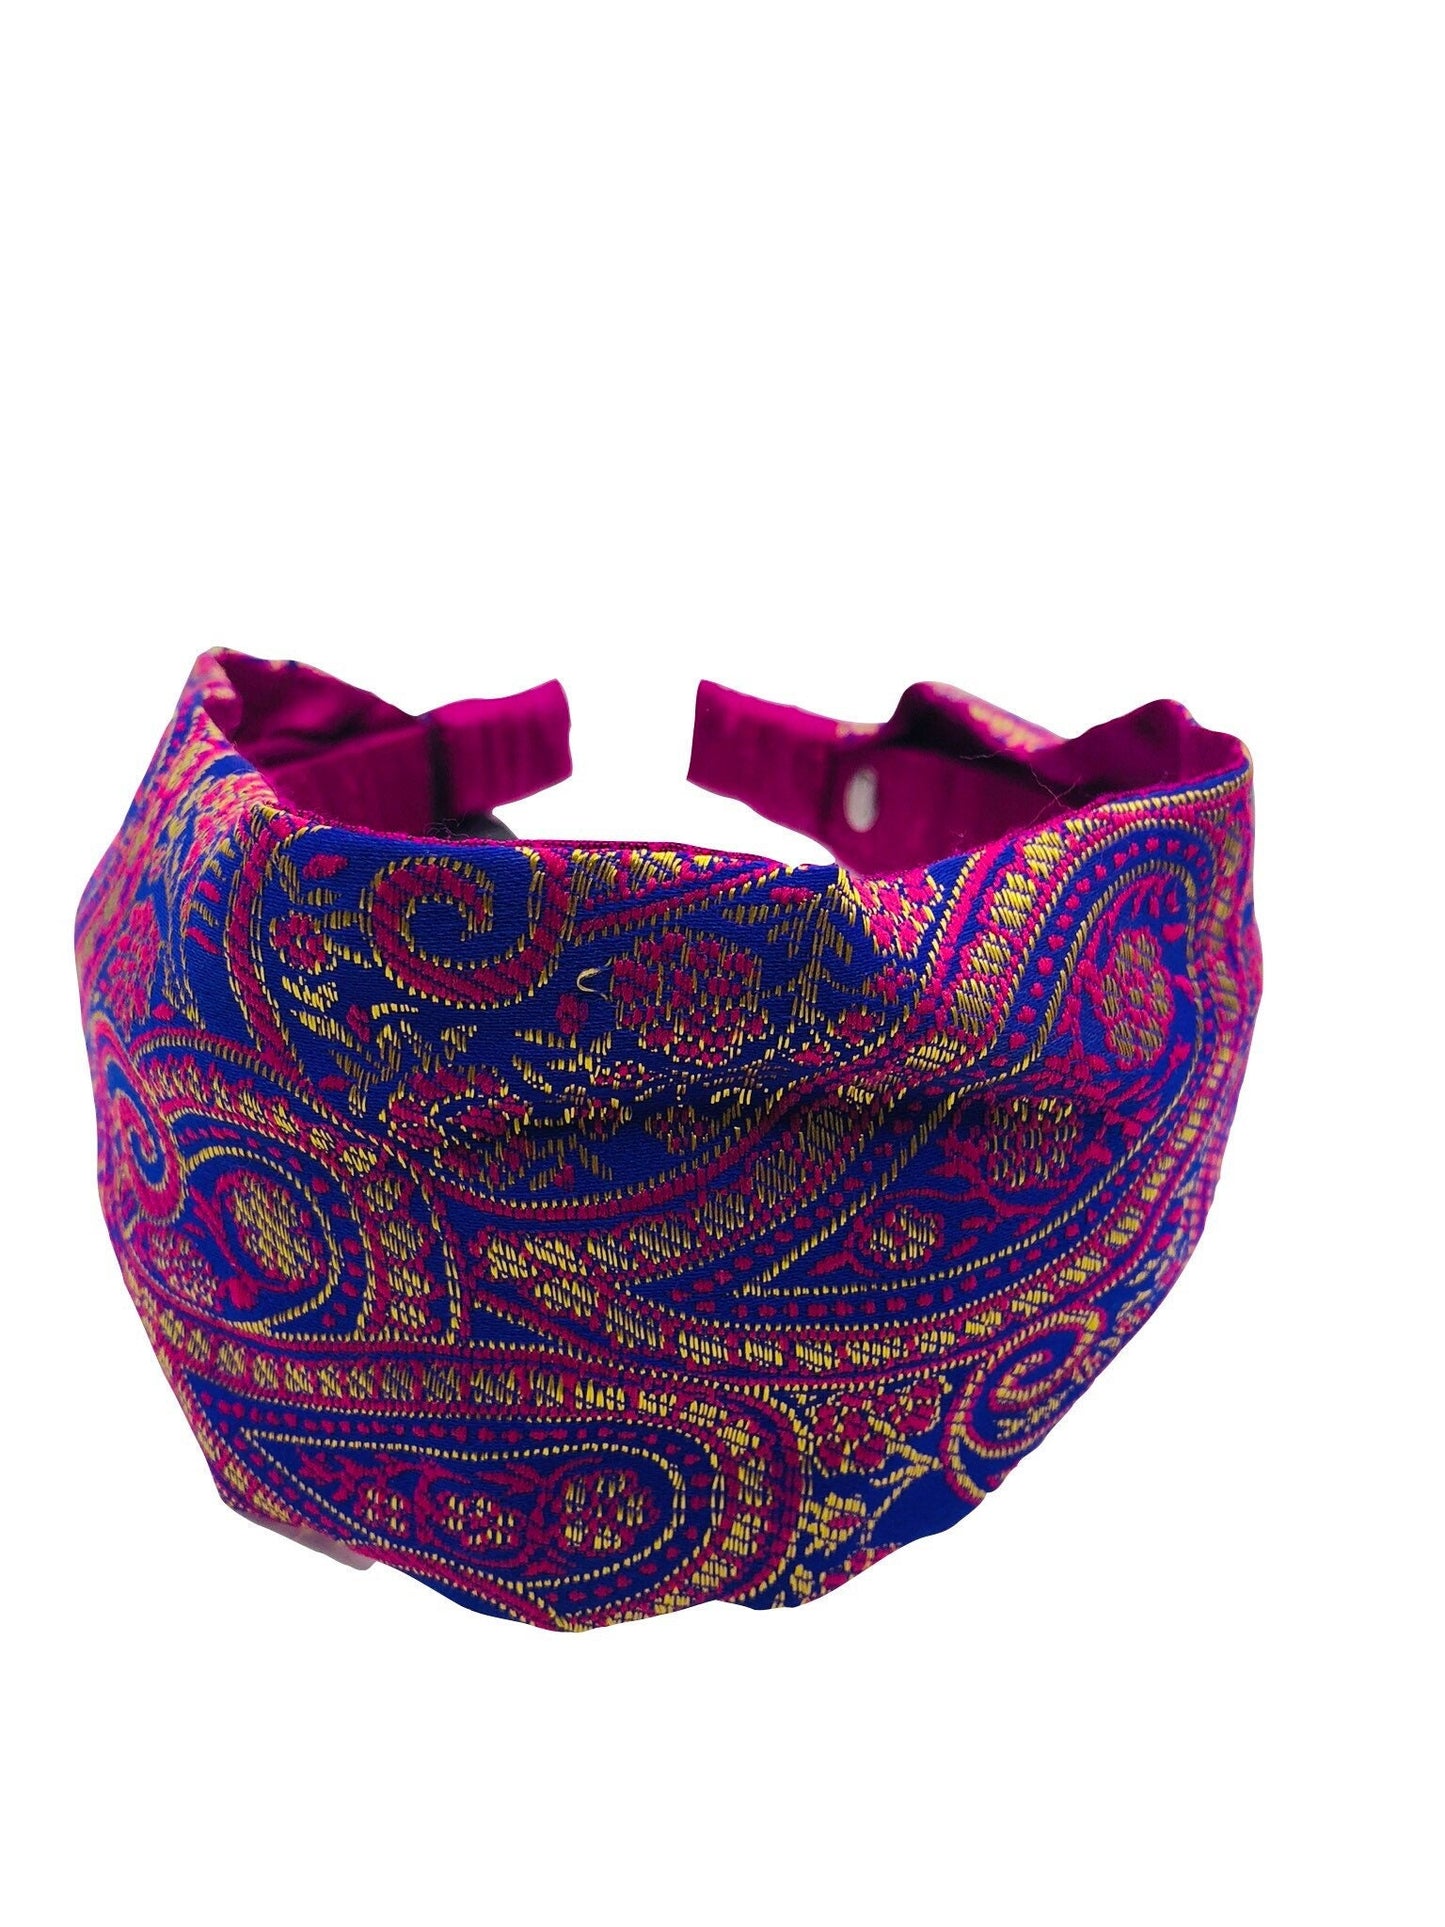 Karin's Garden 3" Sari Silk Scarf Headband.  Handmade in the USA.  Fabric from my trip to Delhi